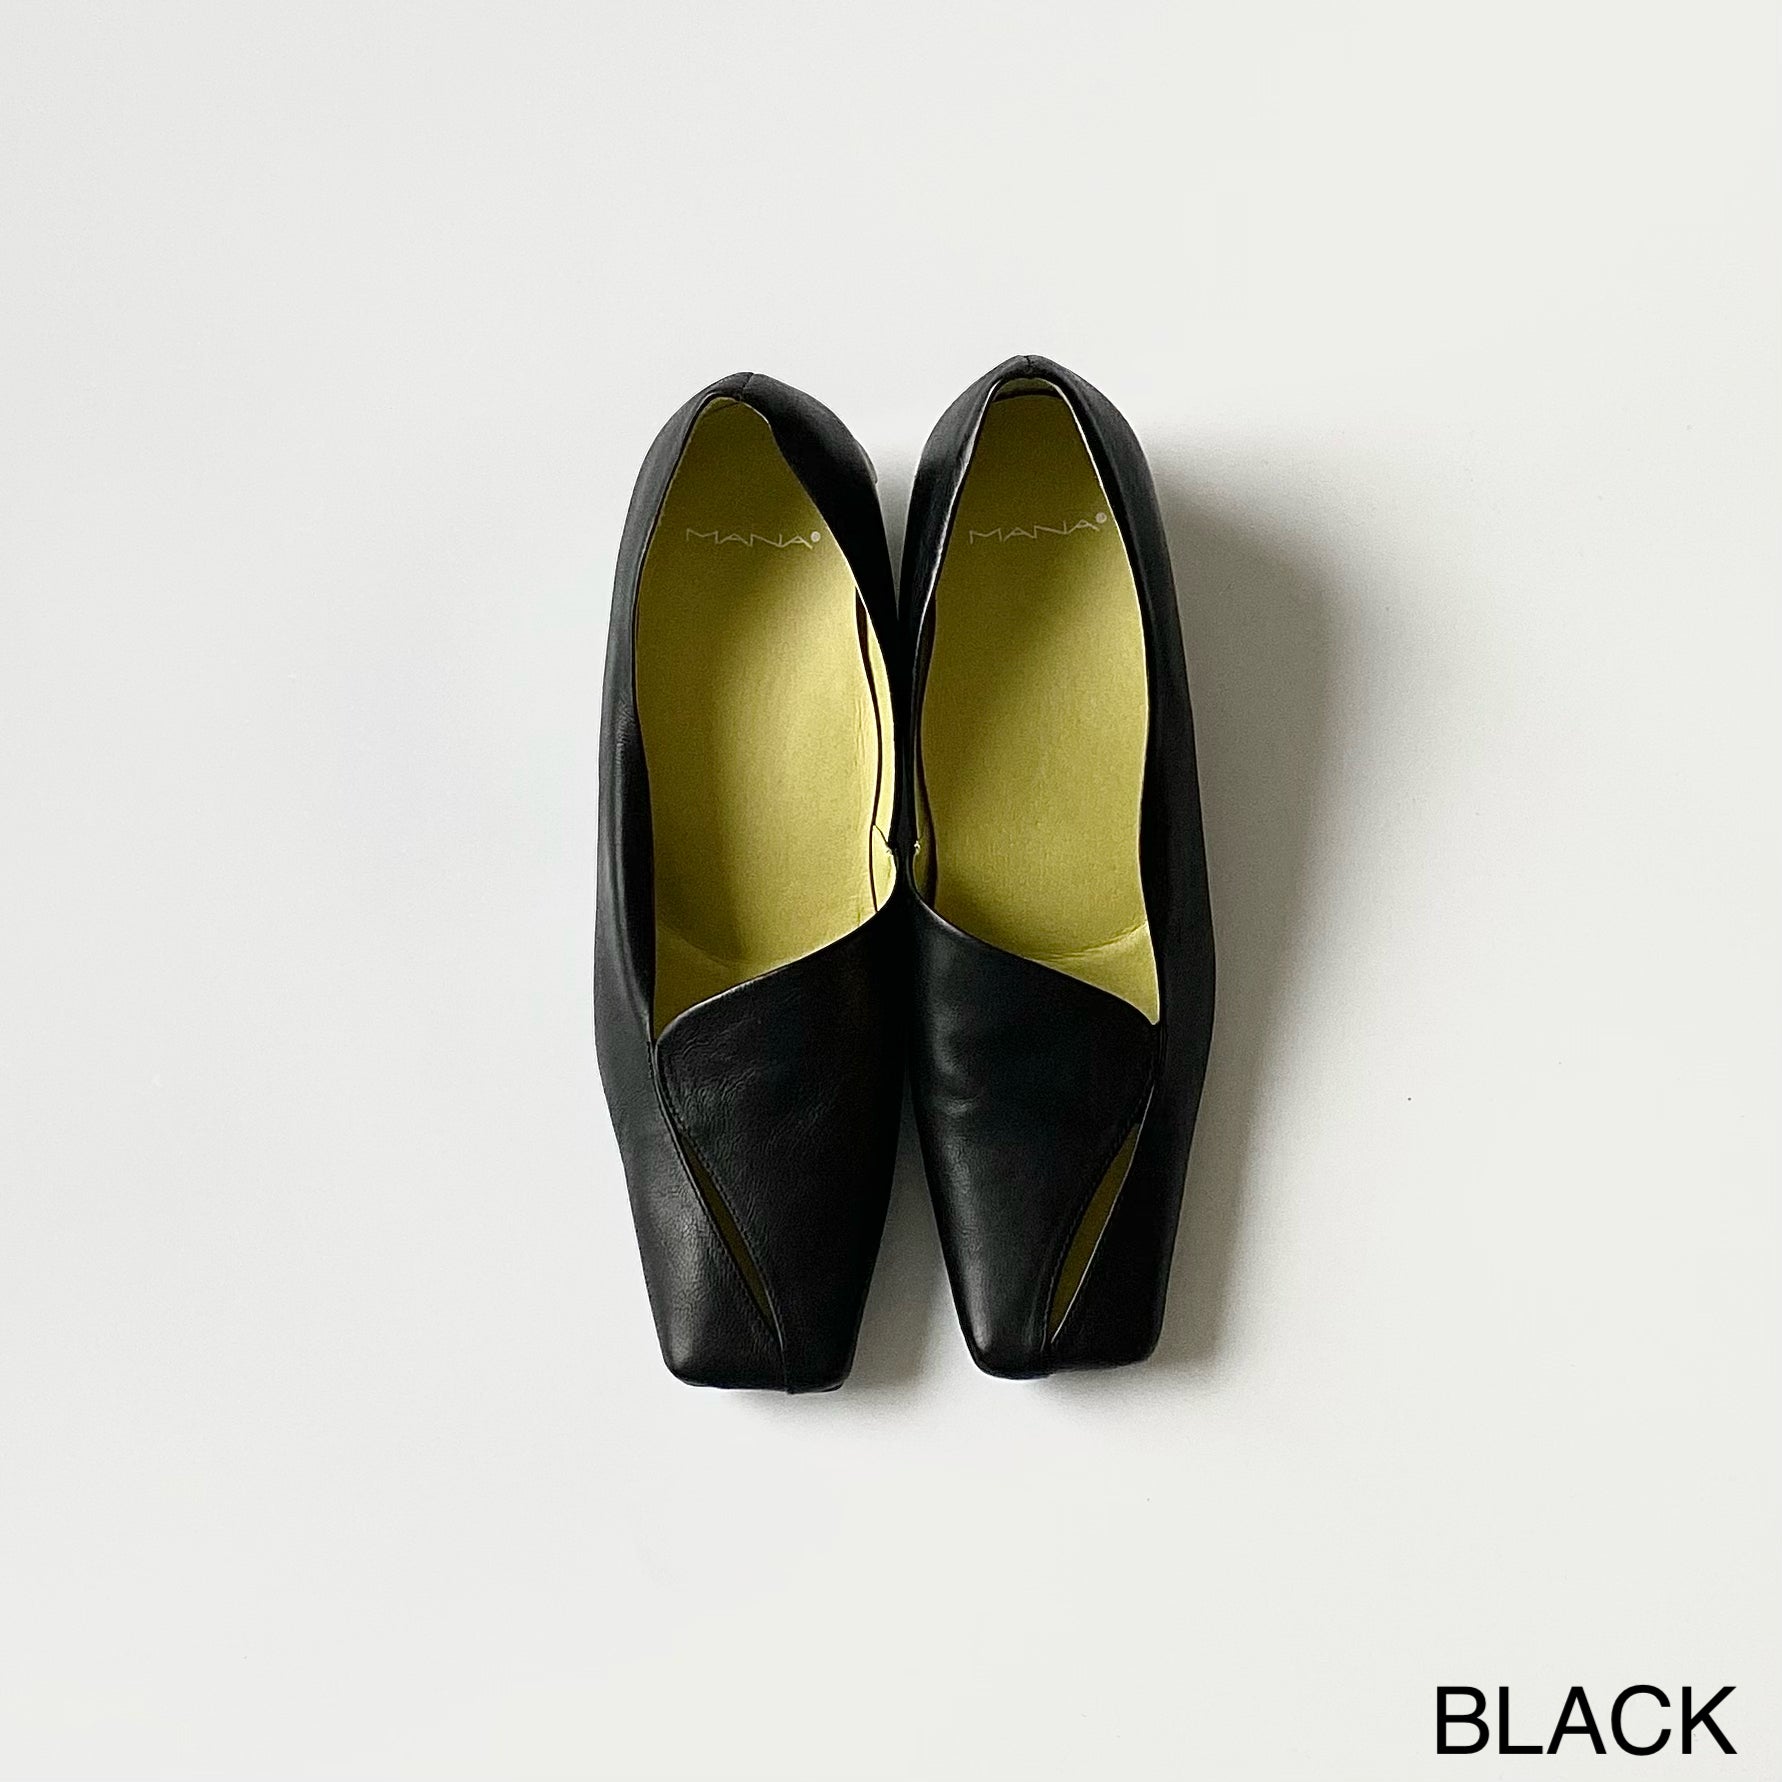 BLACK (LWG) / 35 (22.5cm)